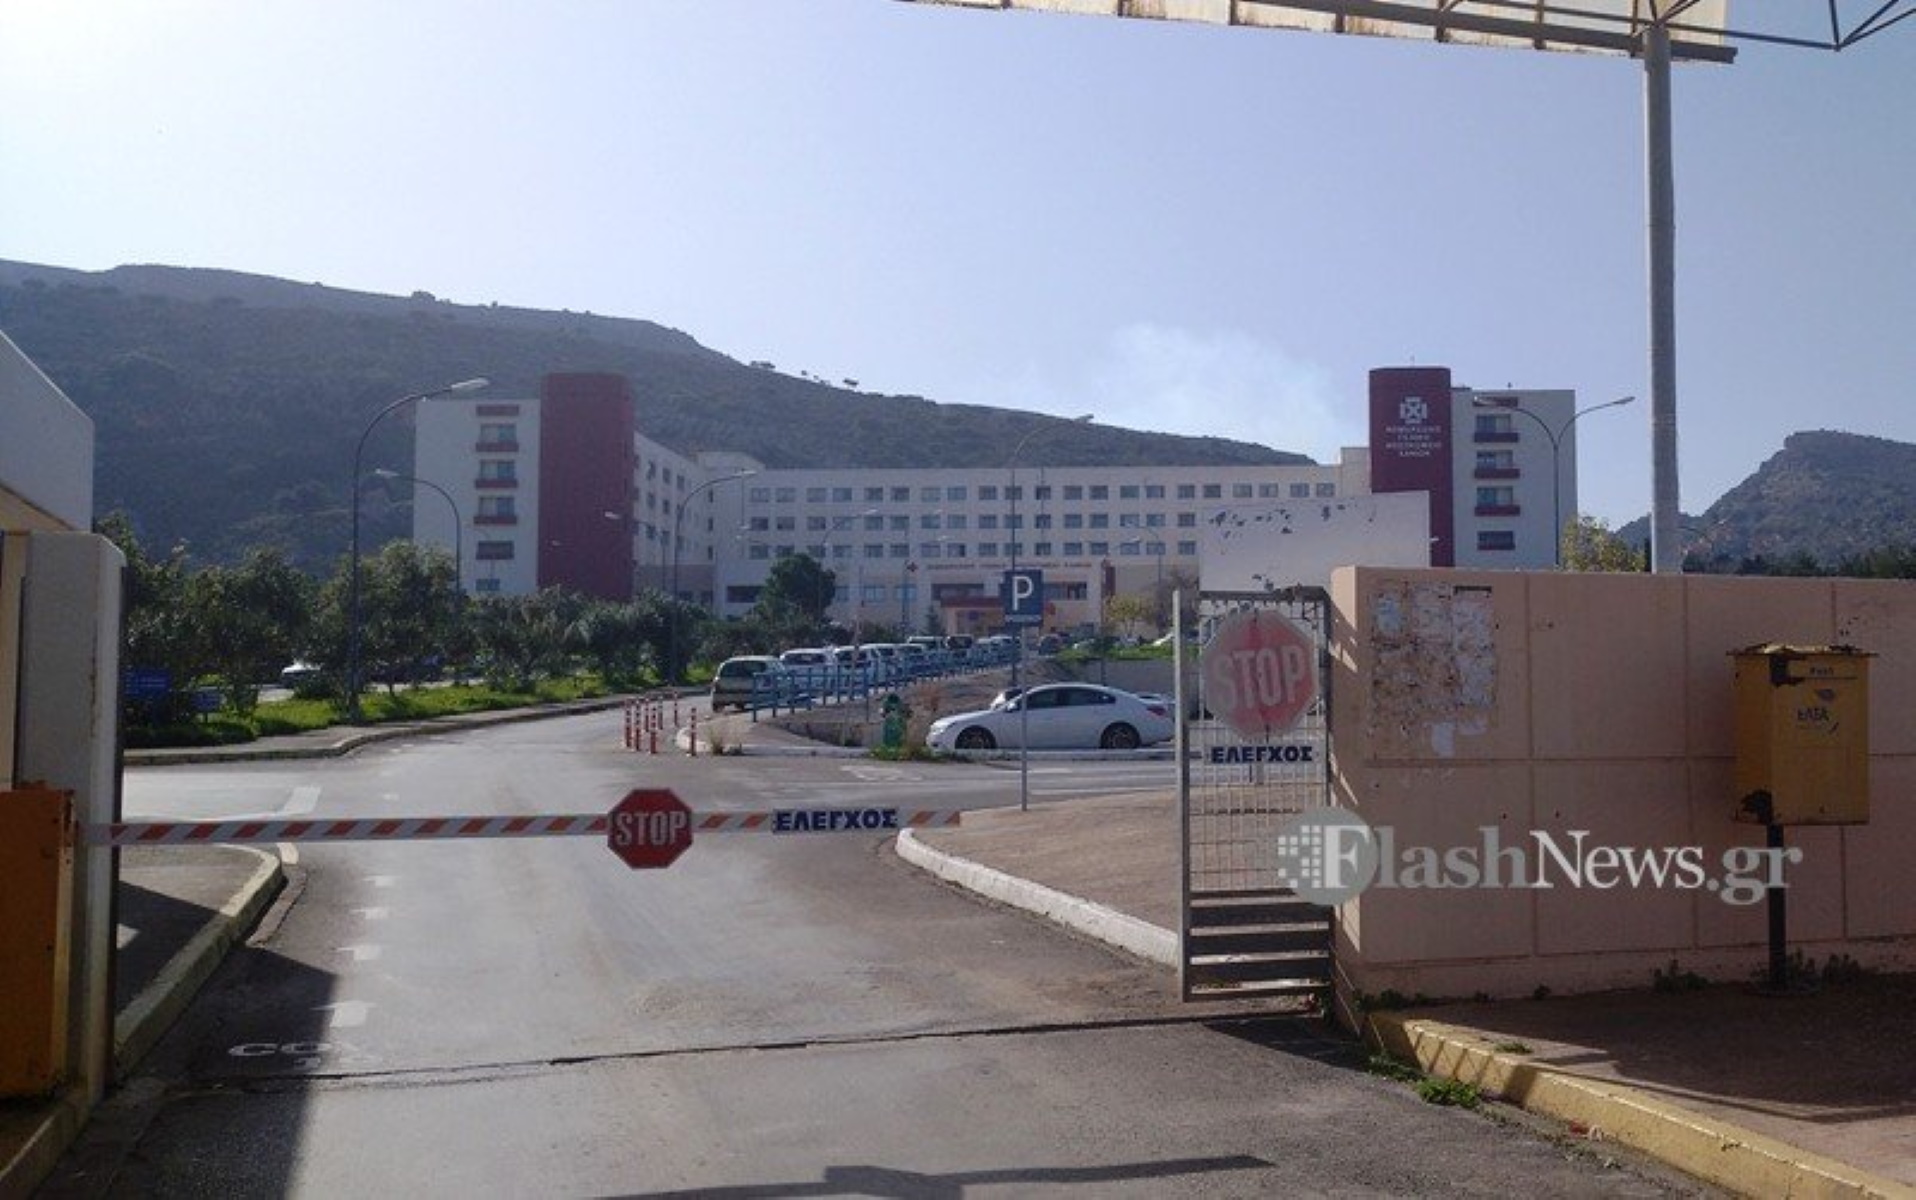 Κρήτη – Κορονοϊός: Αυξήθηκαν οι νοσηλείες στο Νοσοκομείο Χανίων – Σχέδιο για μεταφορά ασθενών στο Ρέθυμνο